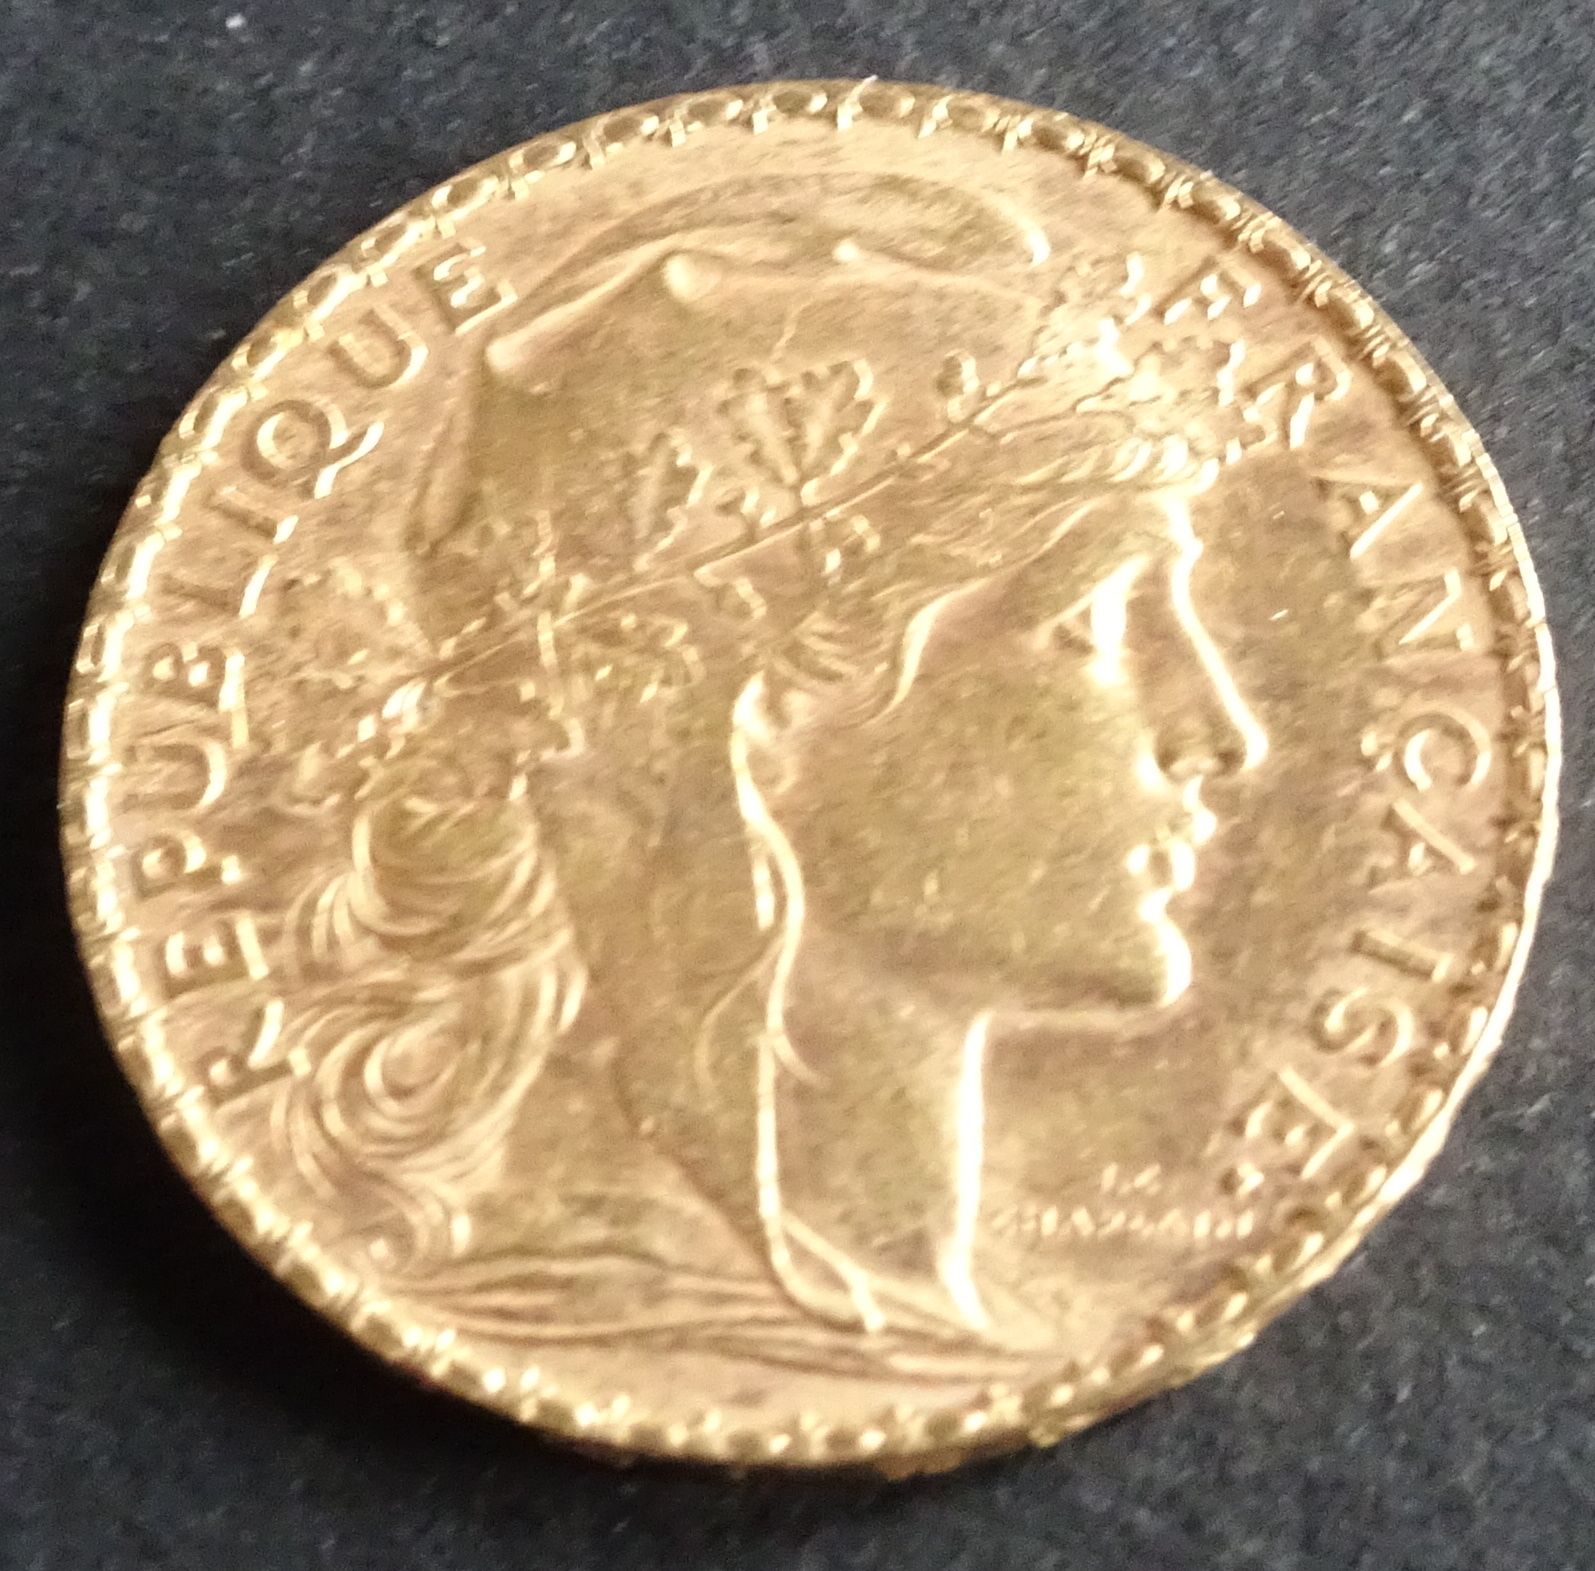 Null GOLD-Münze. 20-Franc-Goldmünze mit Hahn, 1903.
Gewicht: 6,47 g.